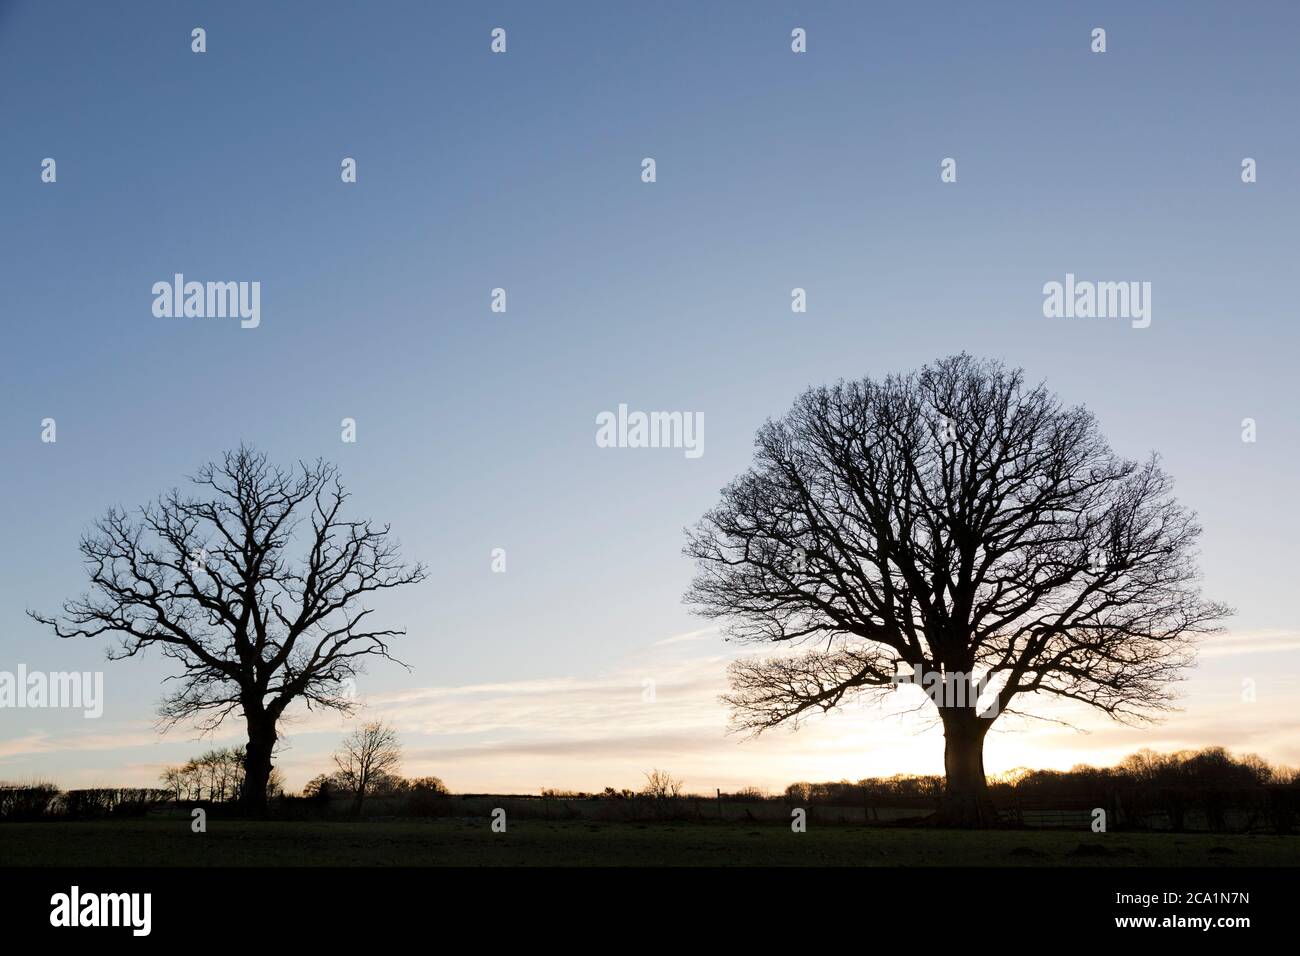 Alberi senza foglie in silhouette contro un cielo invernale nello Shropshire, Inghilterra. Foto Stock